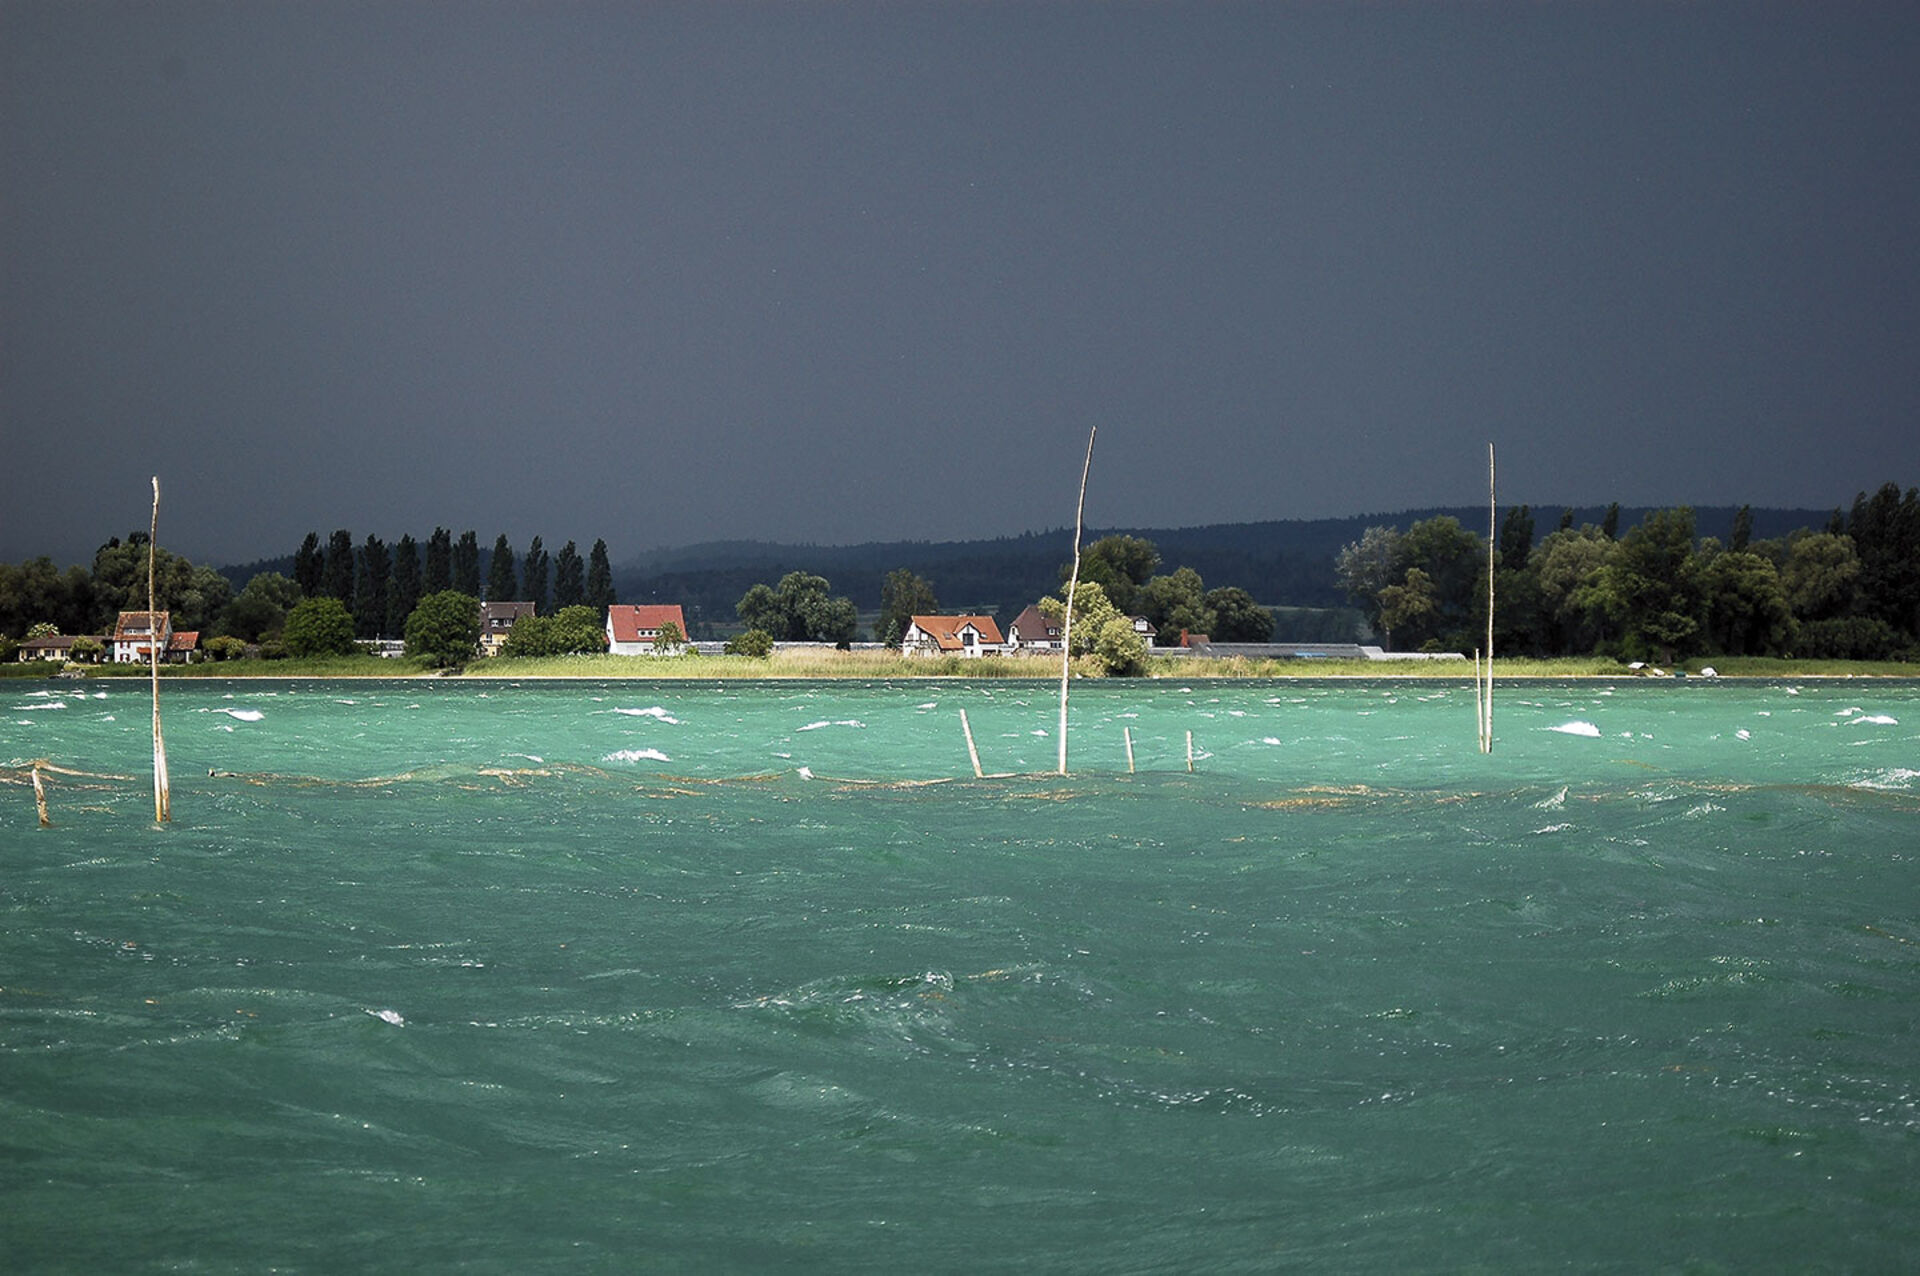  Hechtwetter zwischen Reichenau und Ermatingen. Im Vordergrund sind Fischreiser zu erkennen.  